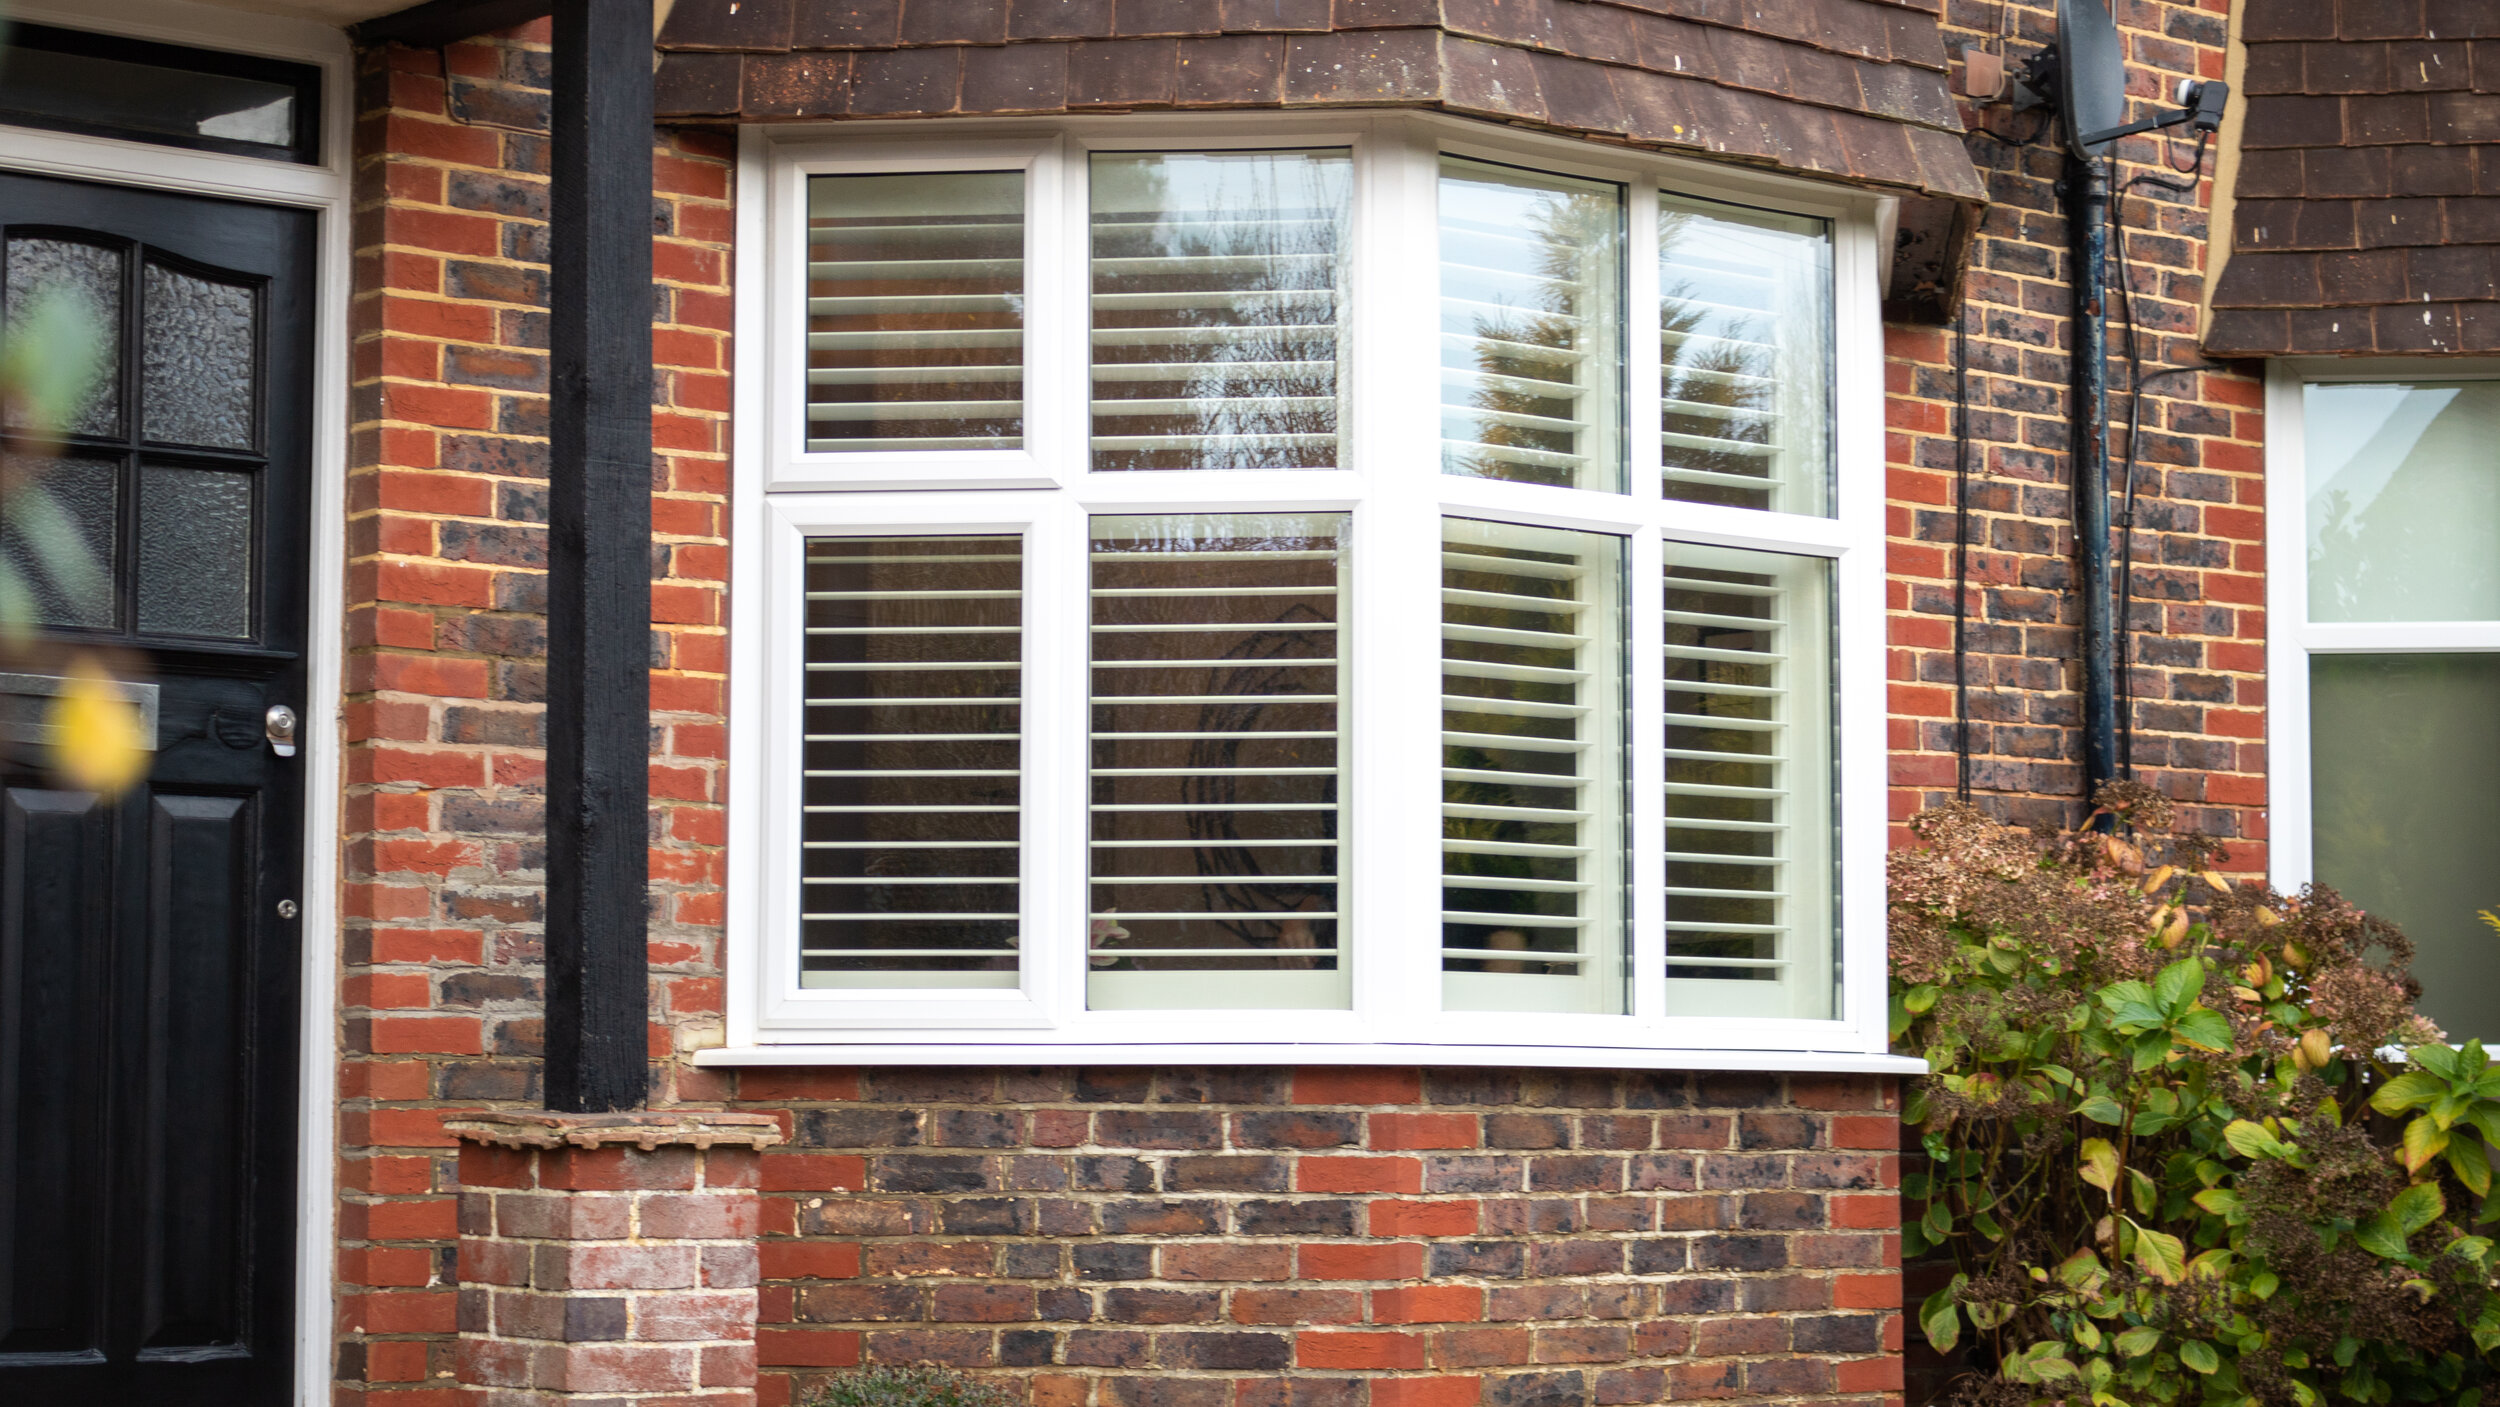 Full-Height Shutter Blinds for Wooden Windows in Brighton